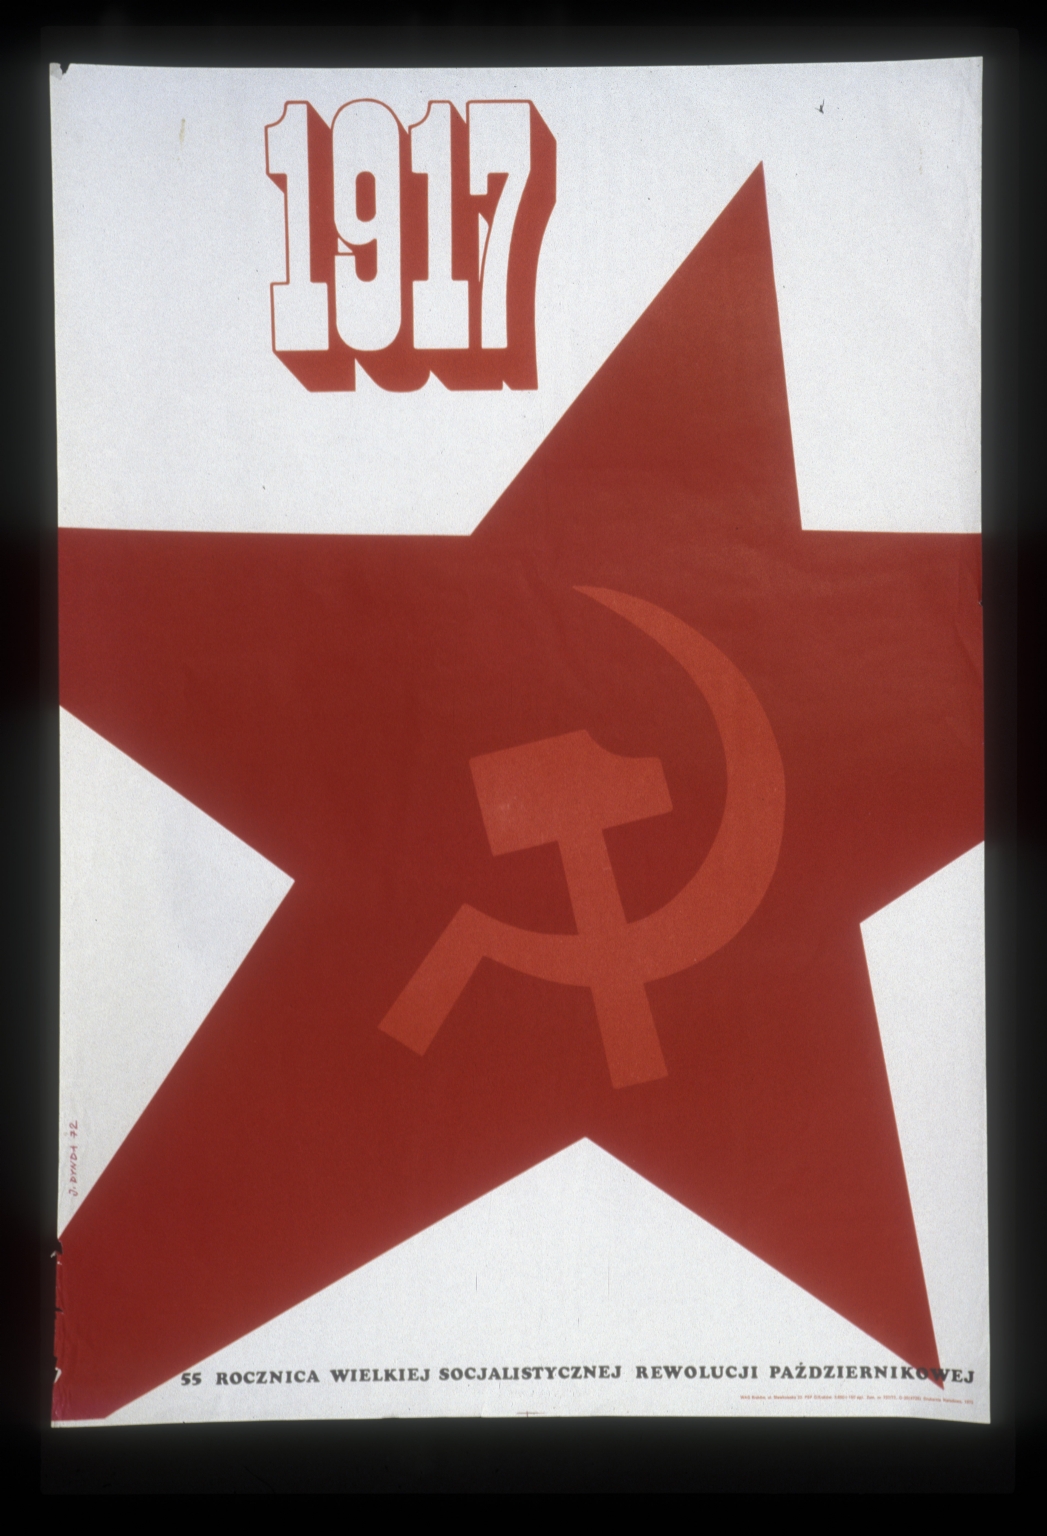 1917, 55 rocznica Wielkiej Sozjalistycznaj Rewolucji Pazdziernikowej